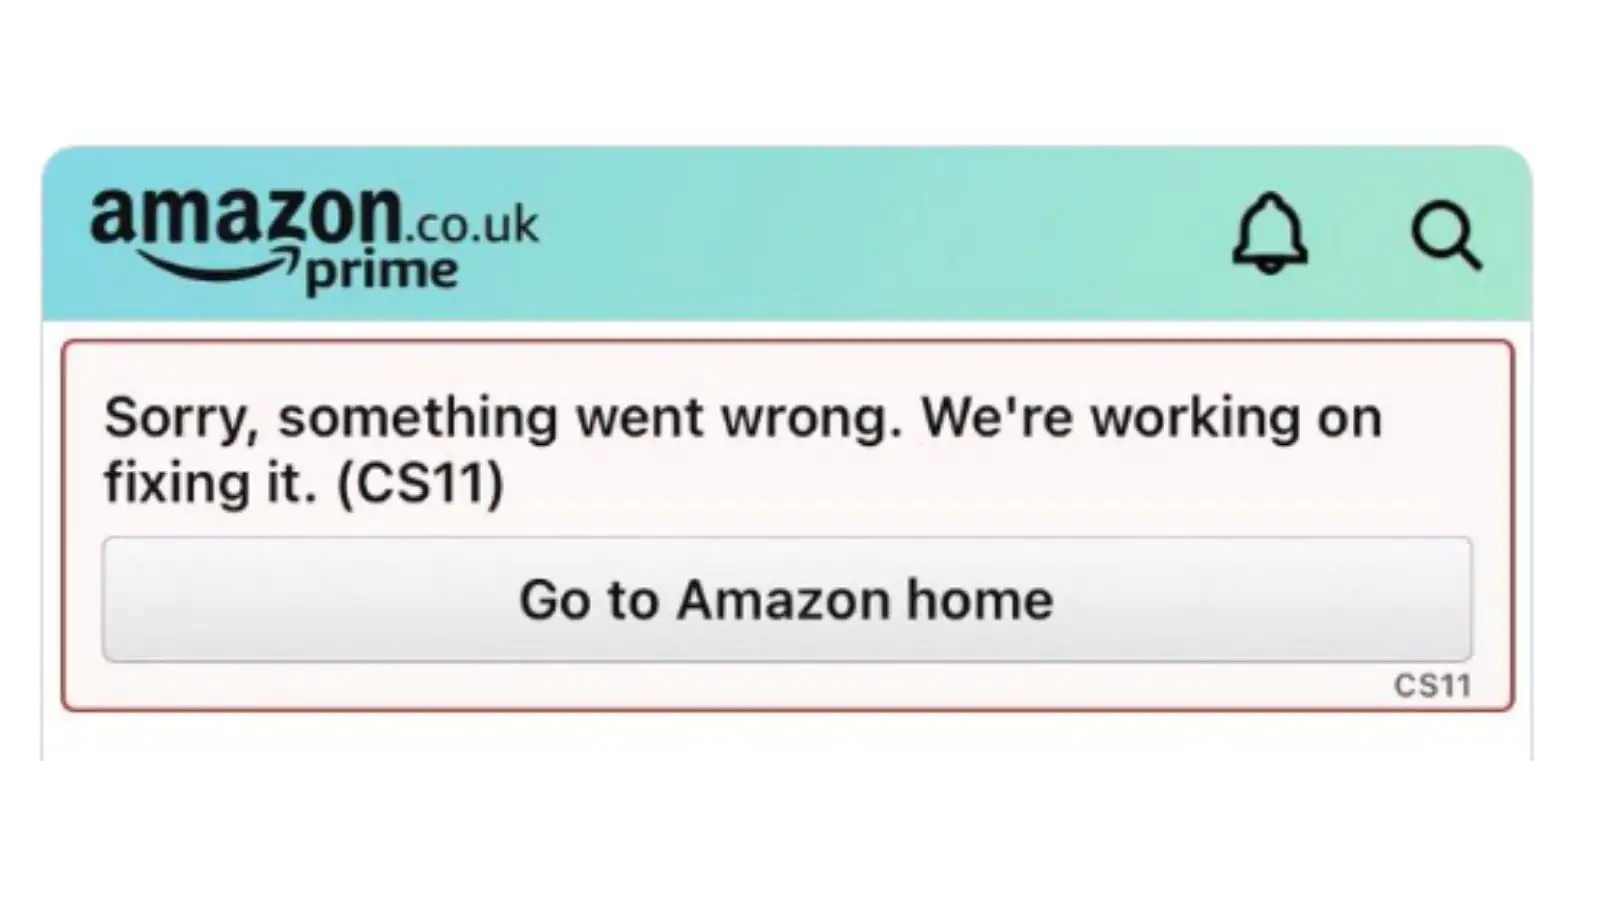 Cs 11 Error Amazon App